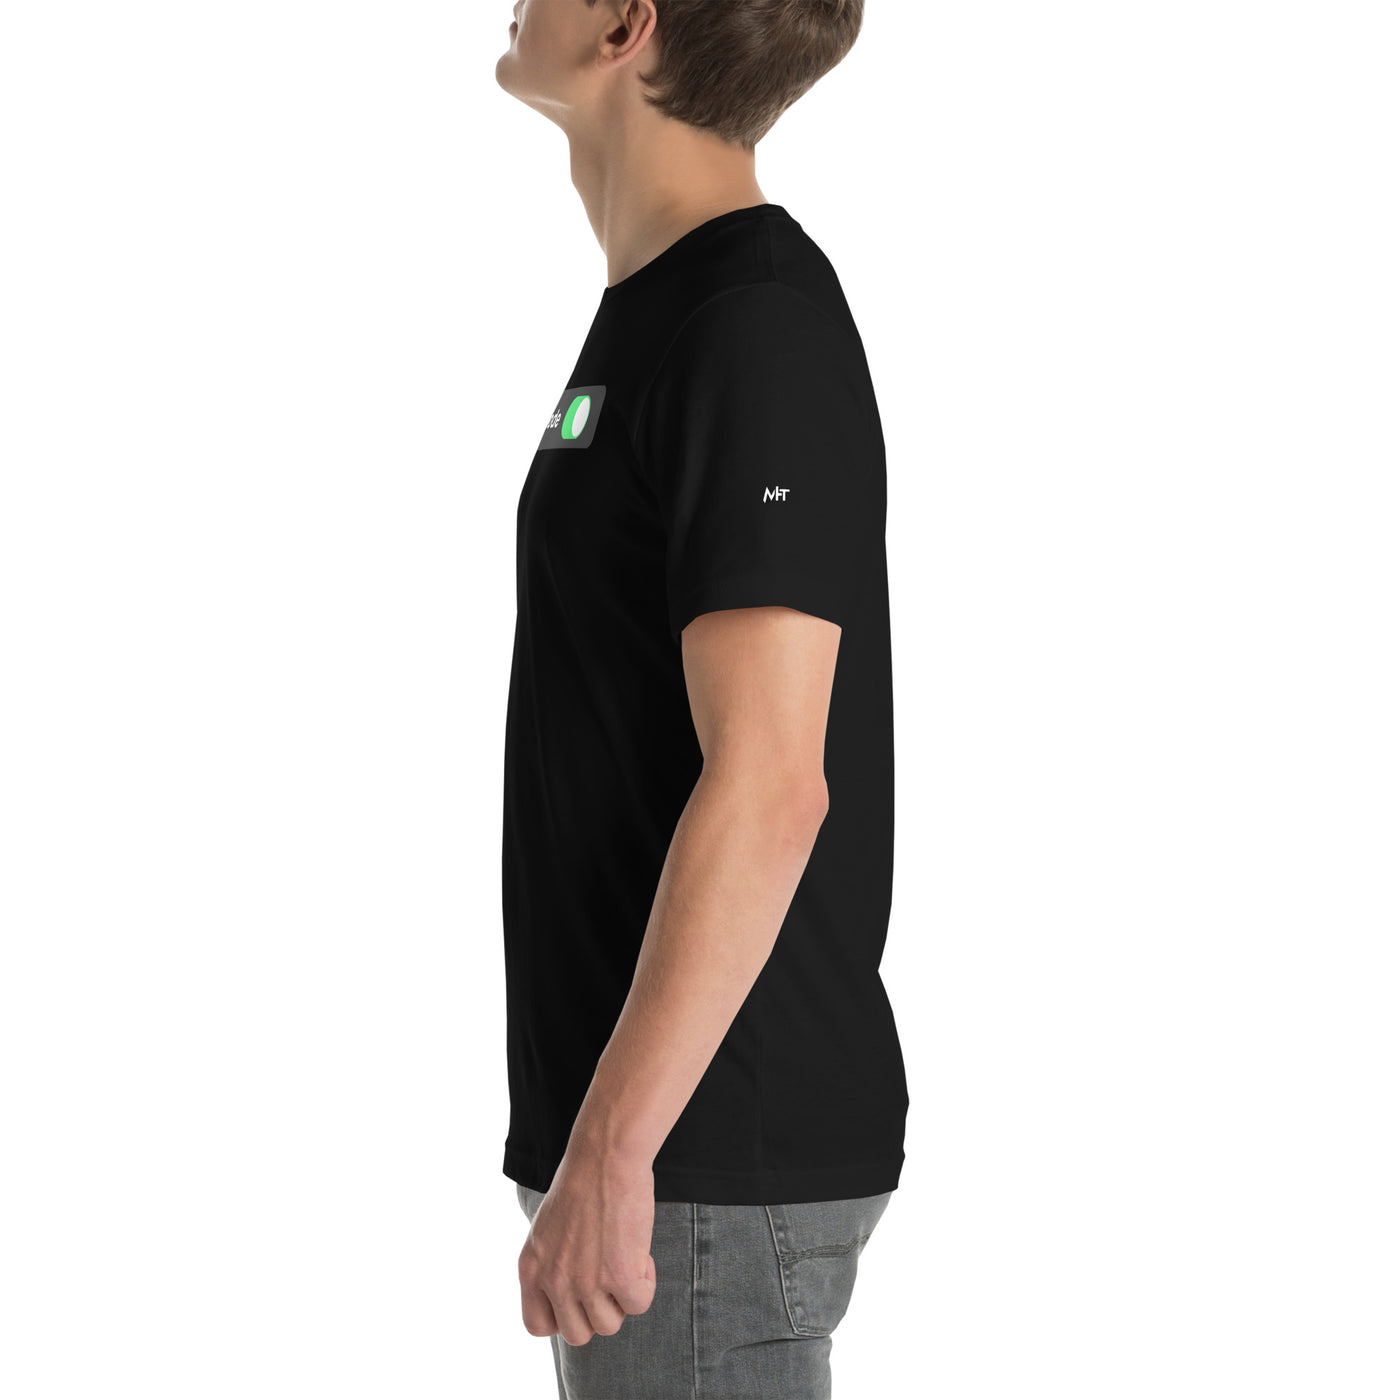 Developer Mode On - Unisex t-shirt